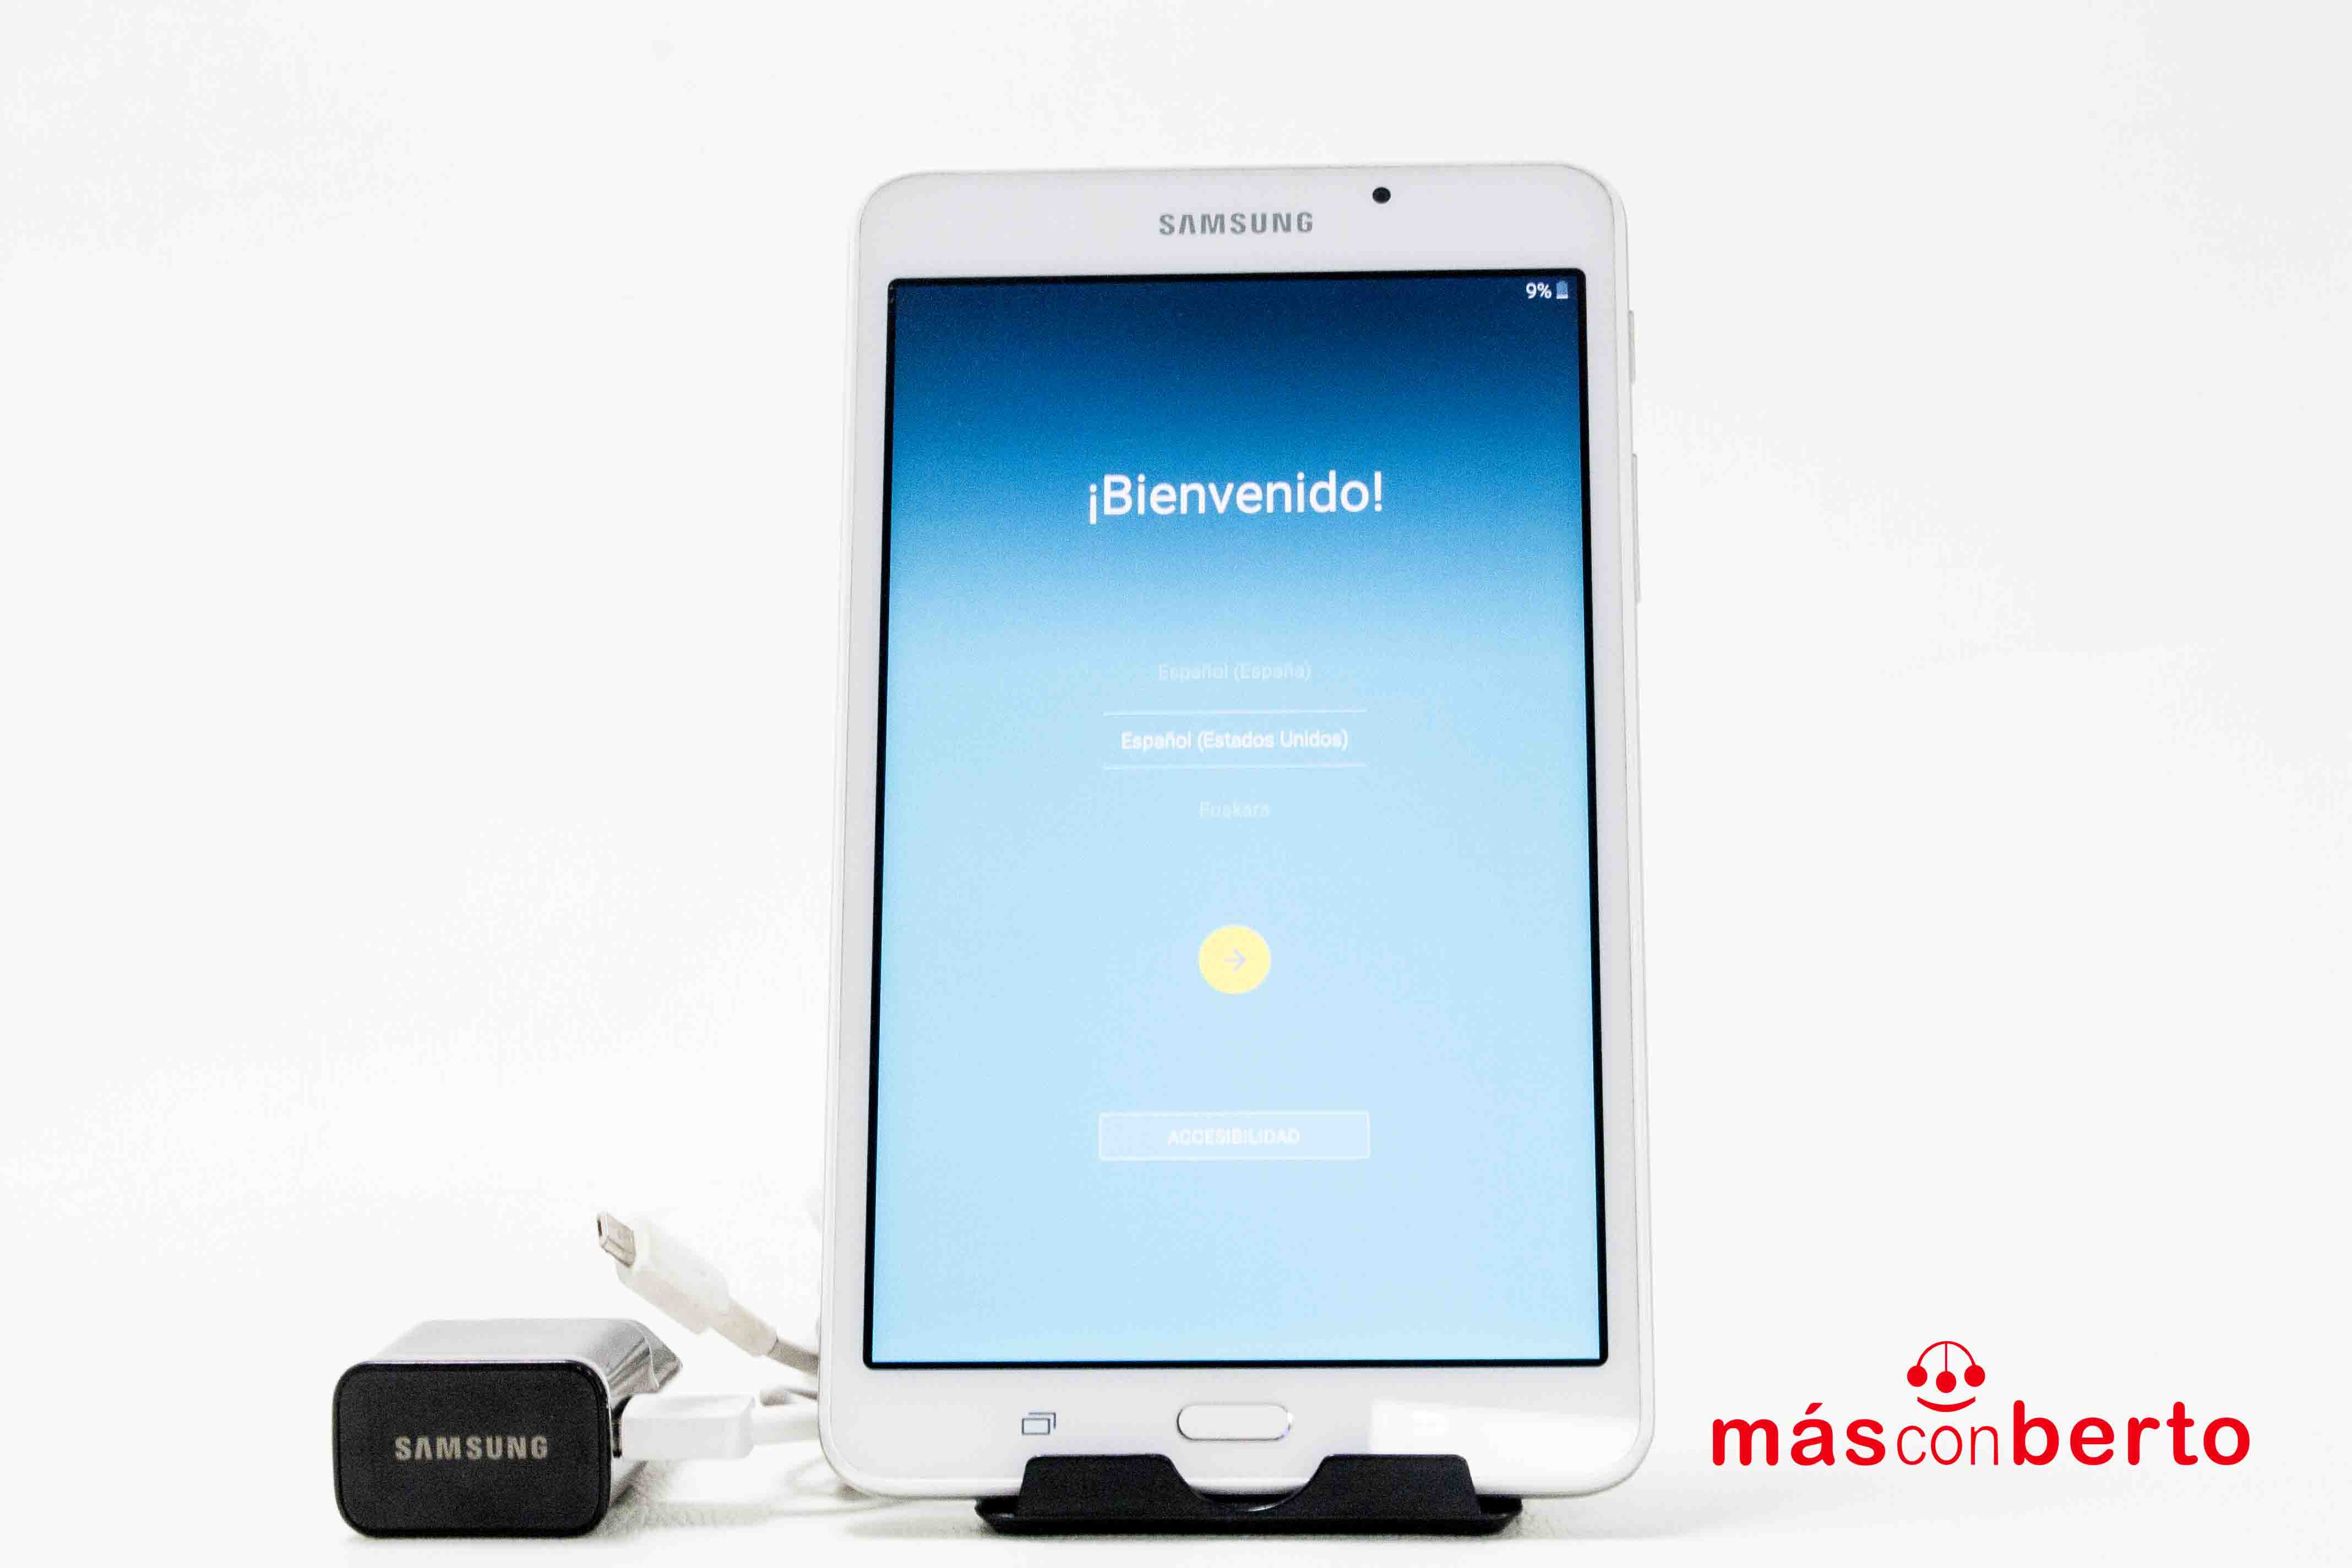 Tablet Samsung Galaxy Tab A...